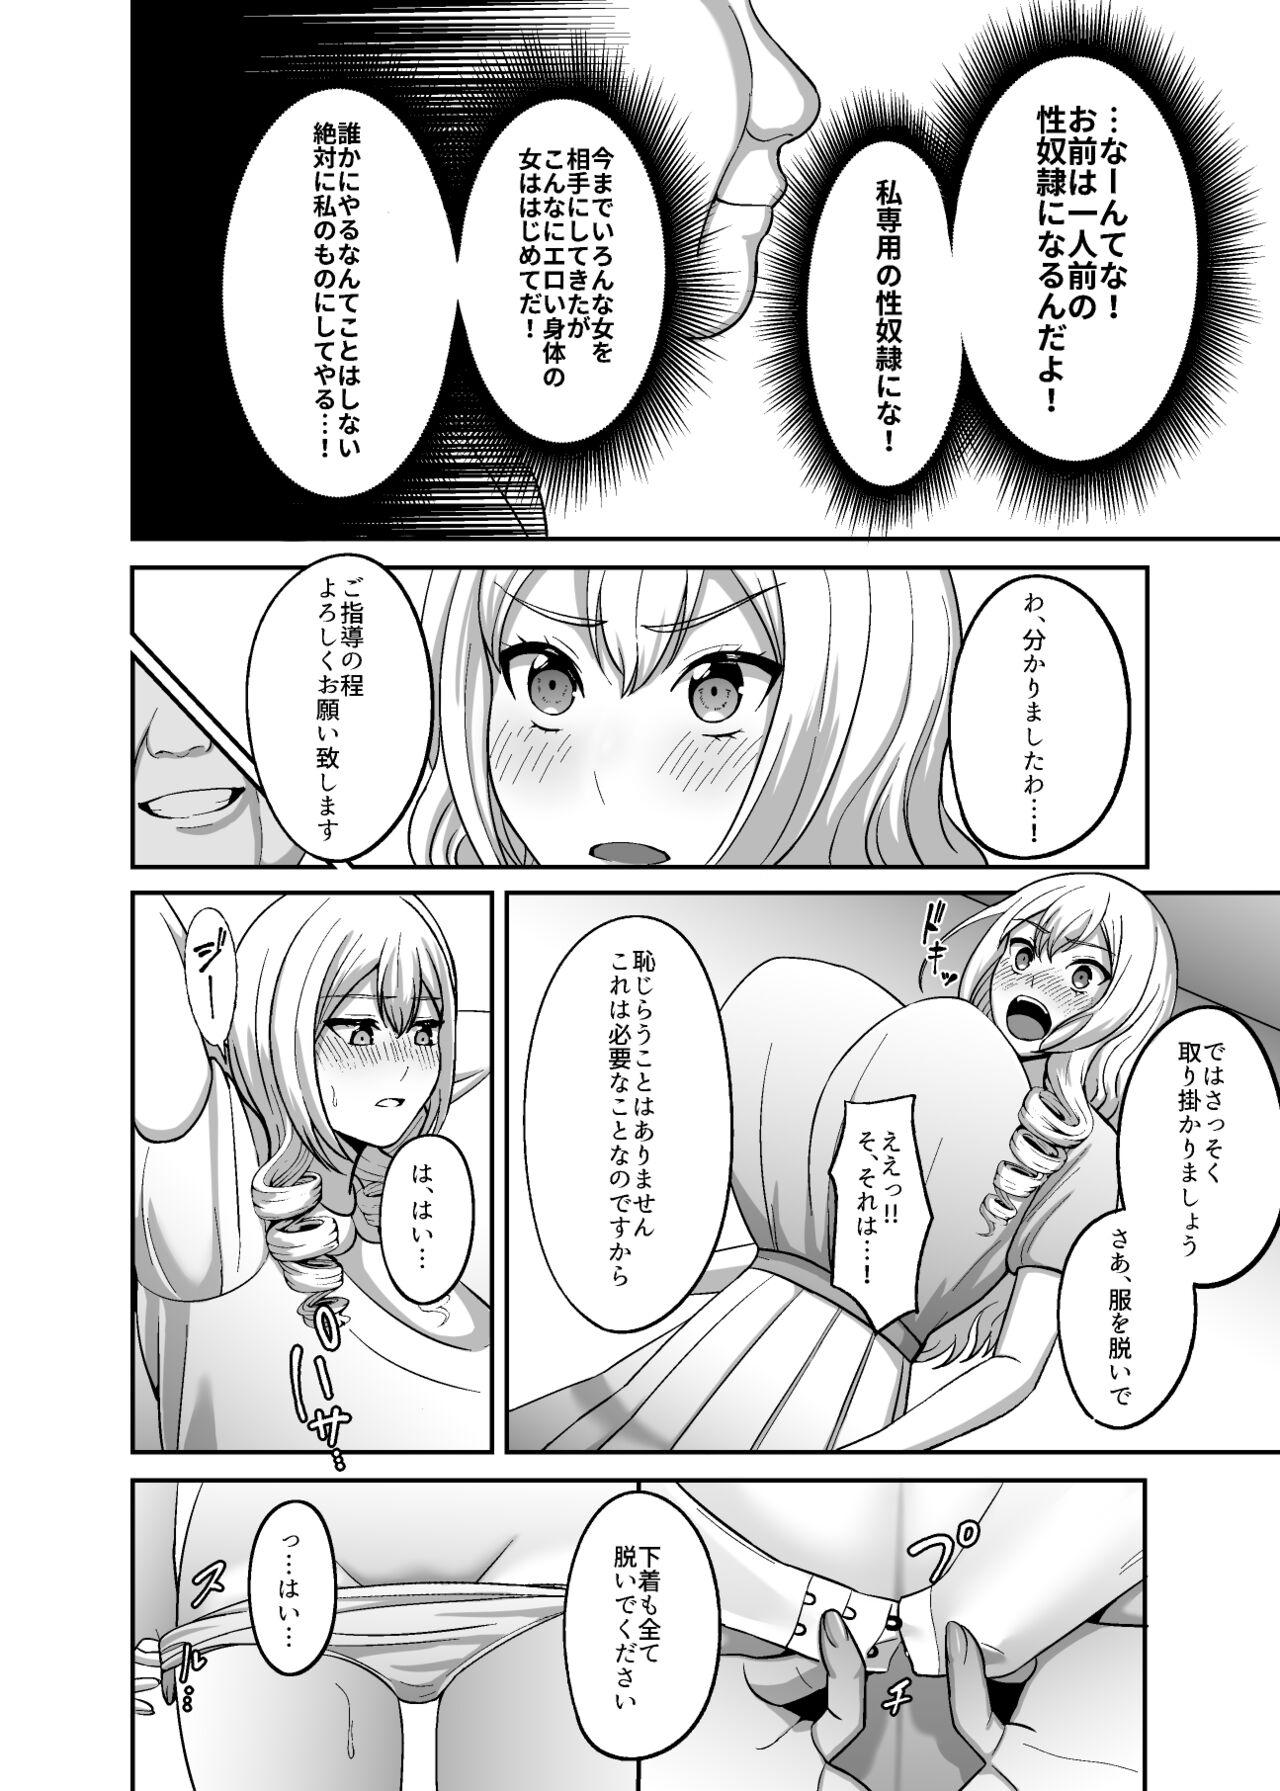 Pussy Licking Ichiryuu no Lady wa Seikoui no Gijutsu mo Ichiryuu denakute wa - Original Sweet - Page 5